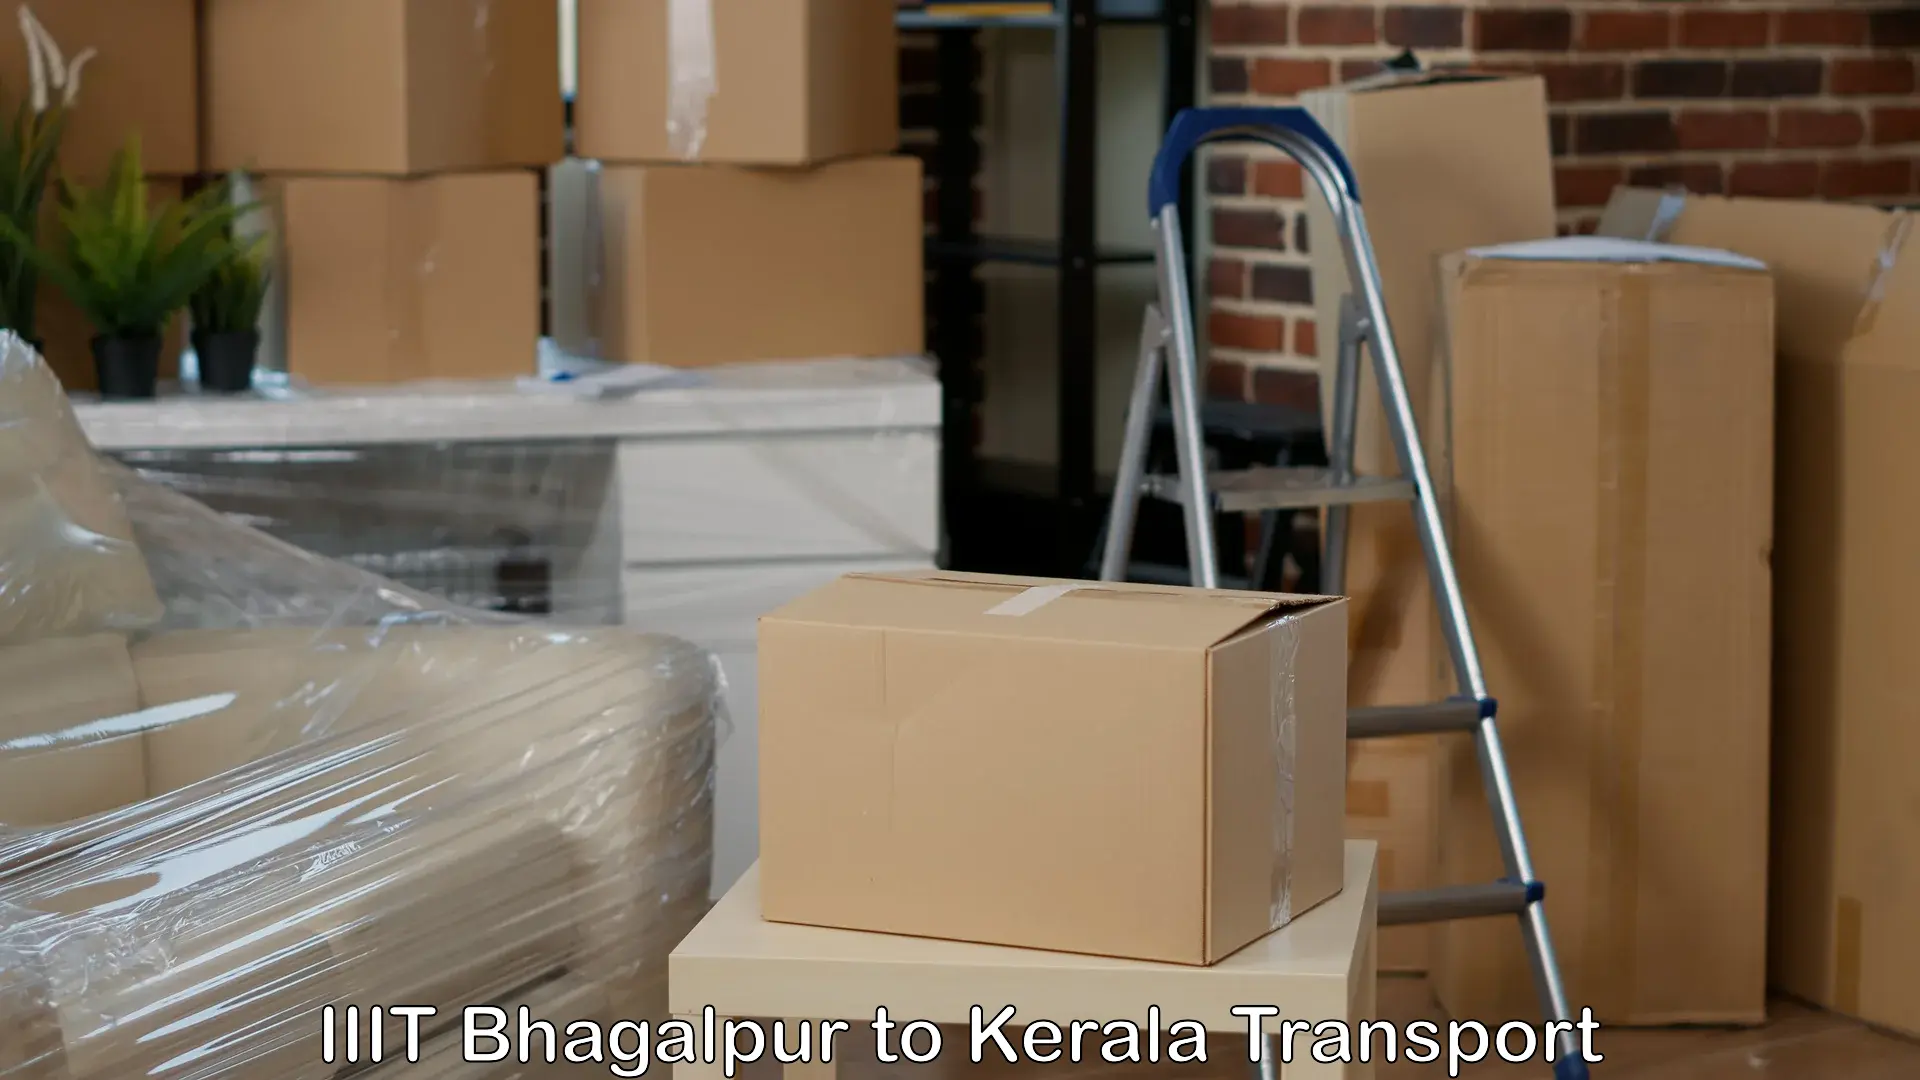 Cargo transport services IIIT Bhagalpur to Kanjiramattom